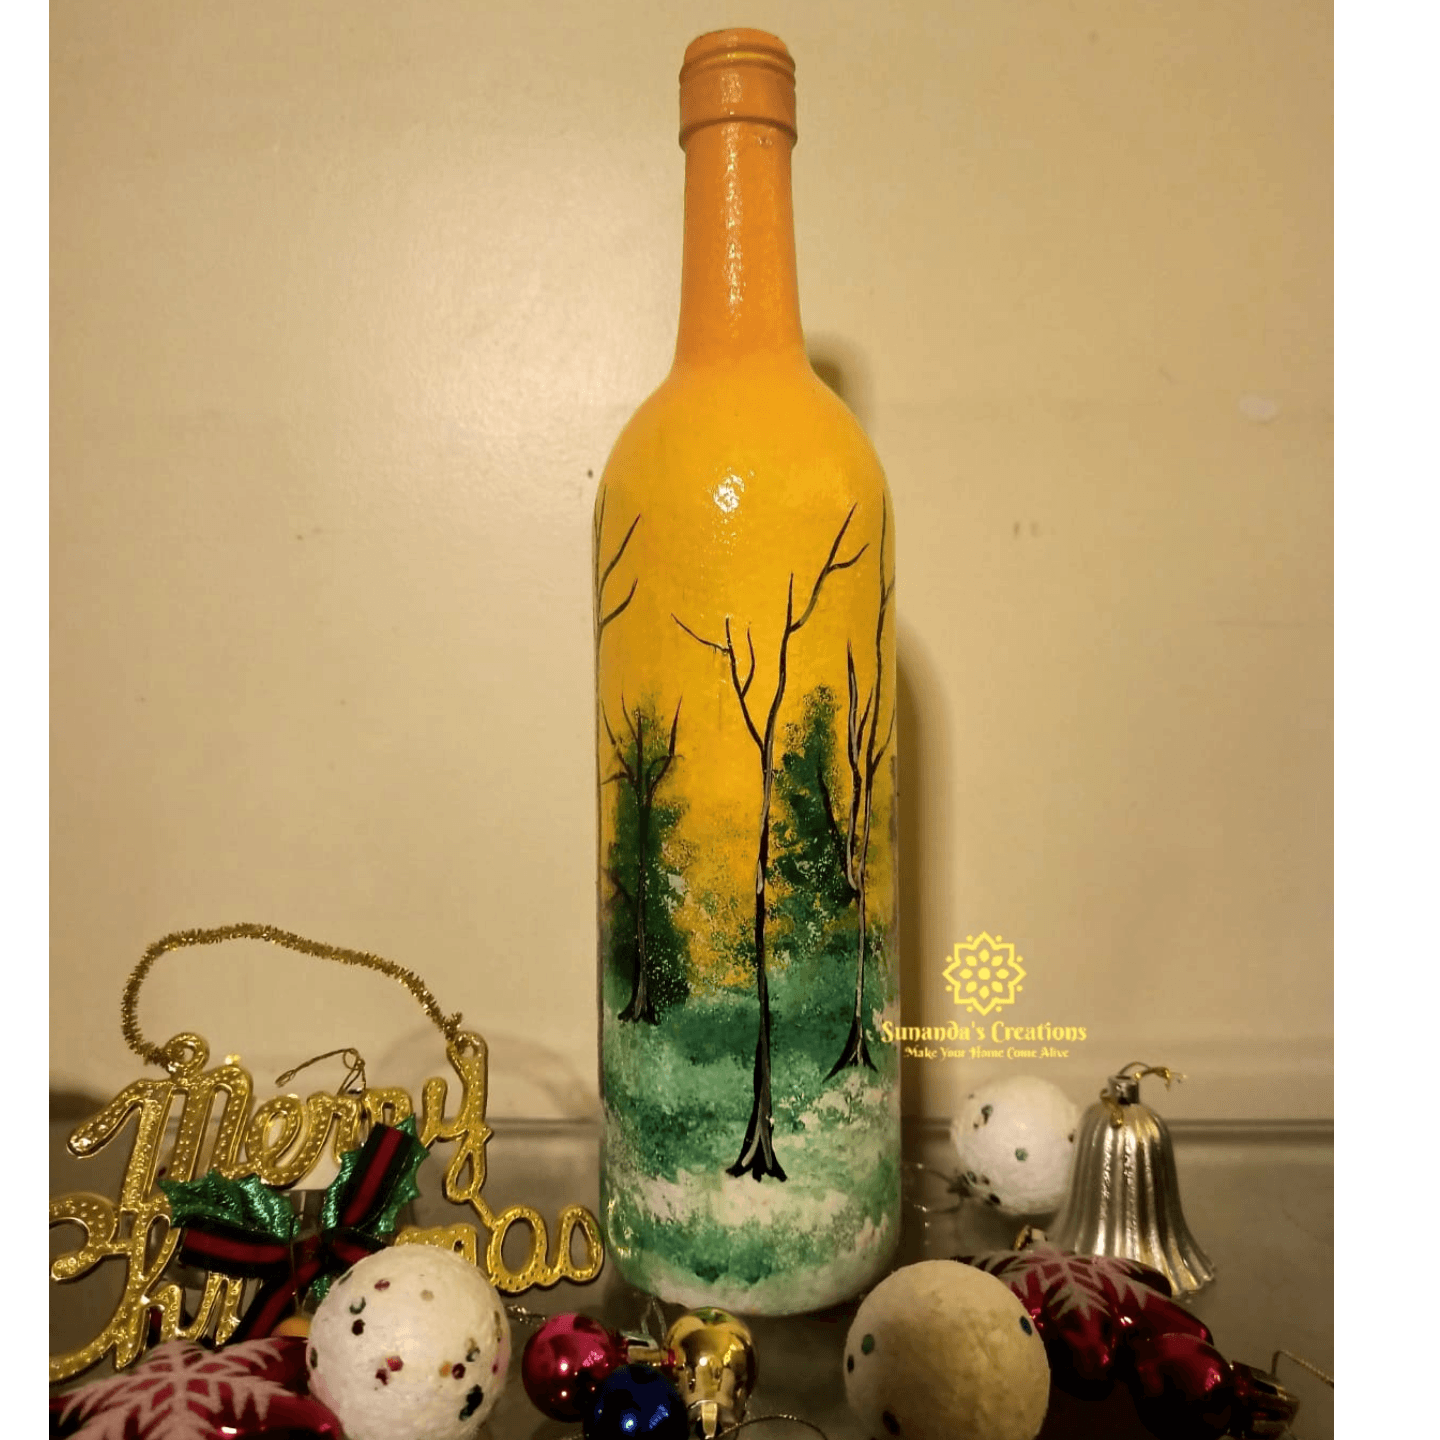 Winter themed handpainted bottle art